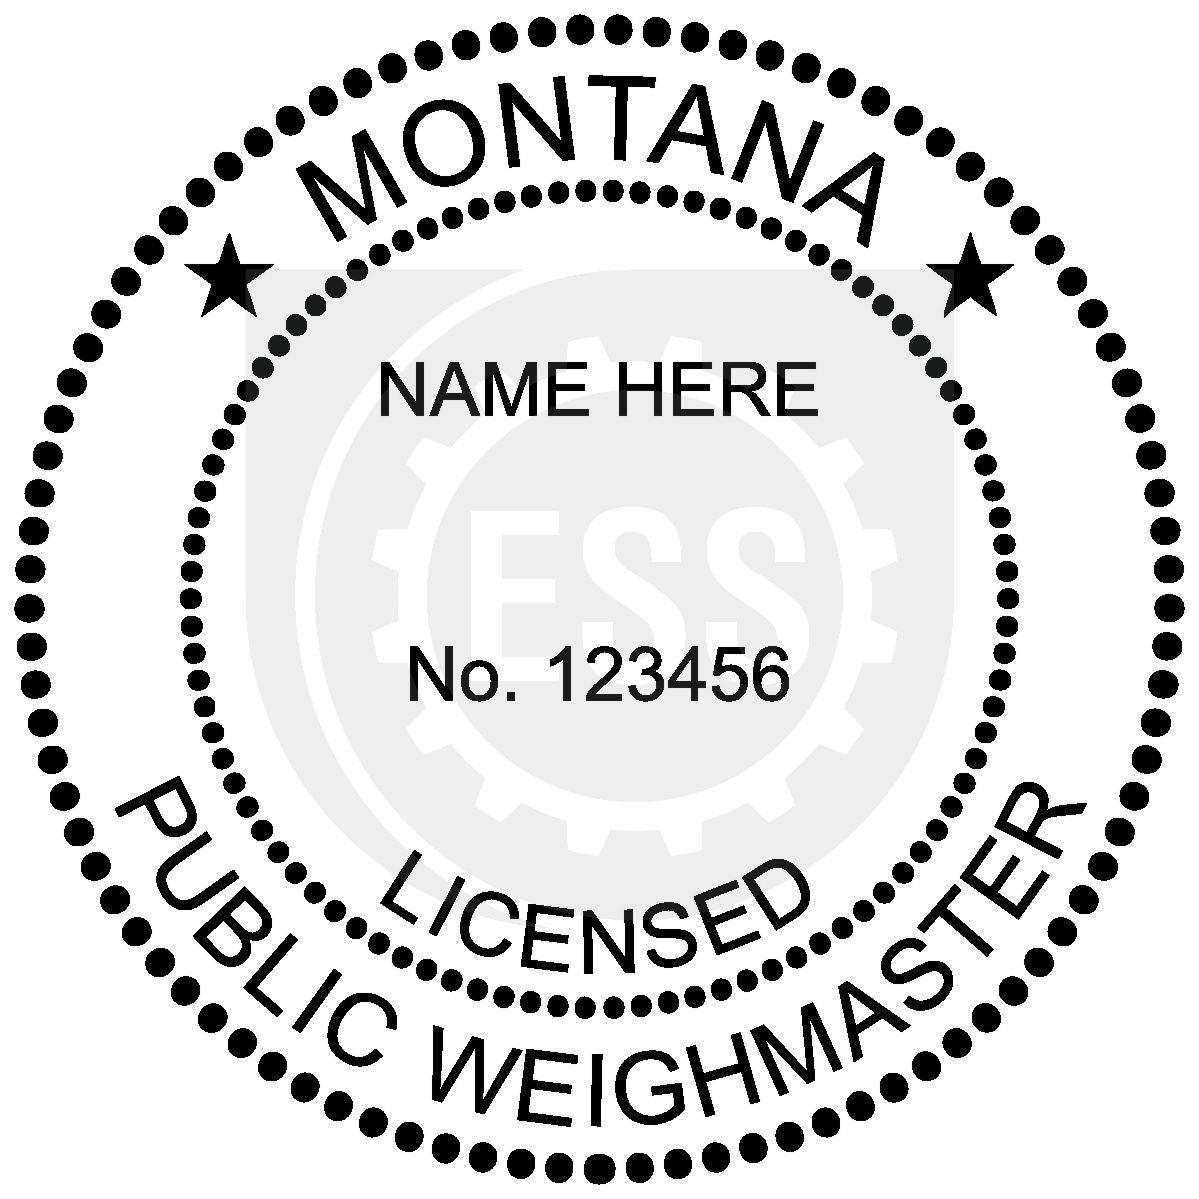 Montana Public Weighmaster Seal Setup